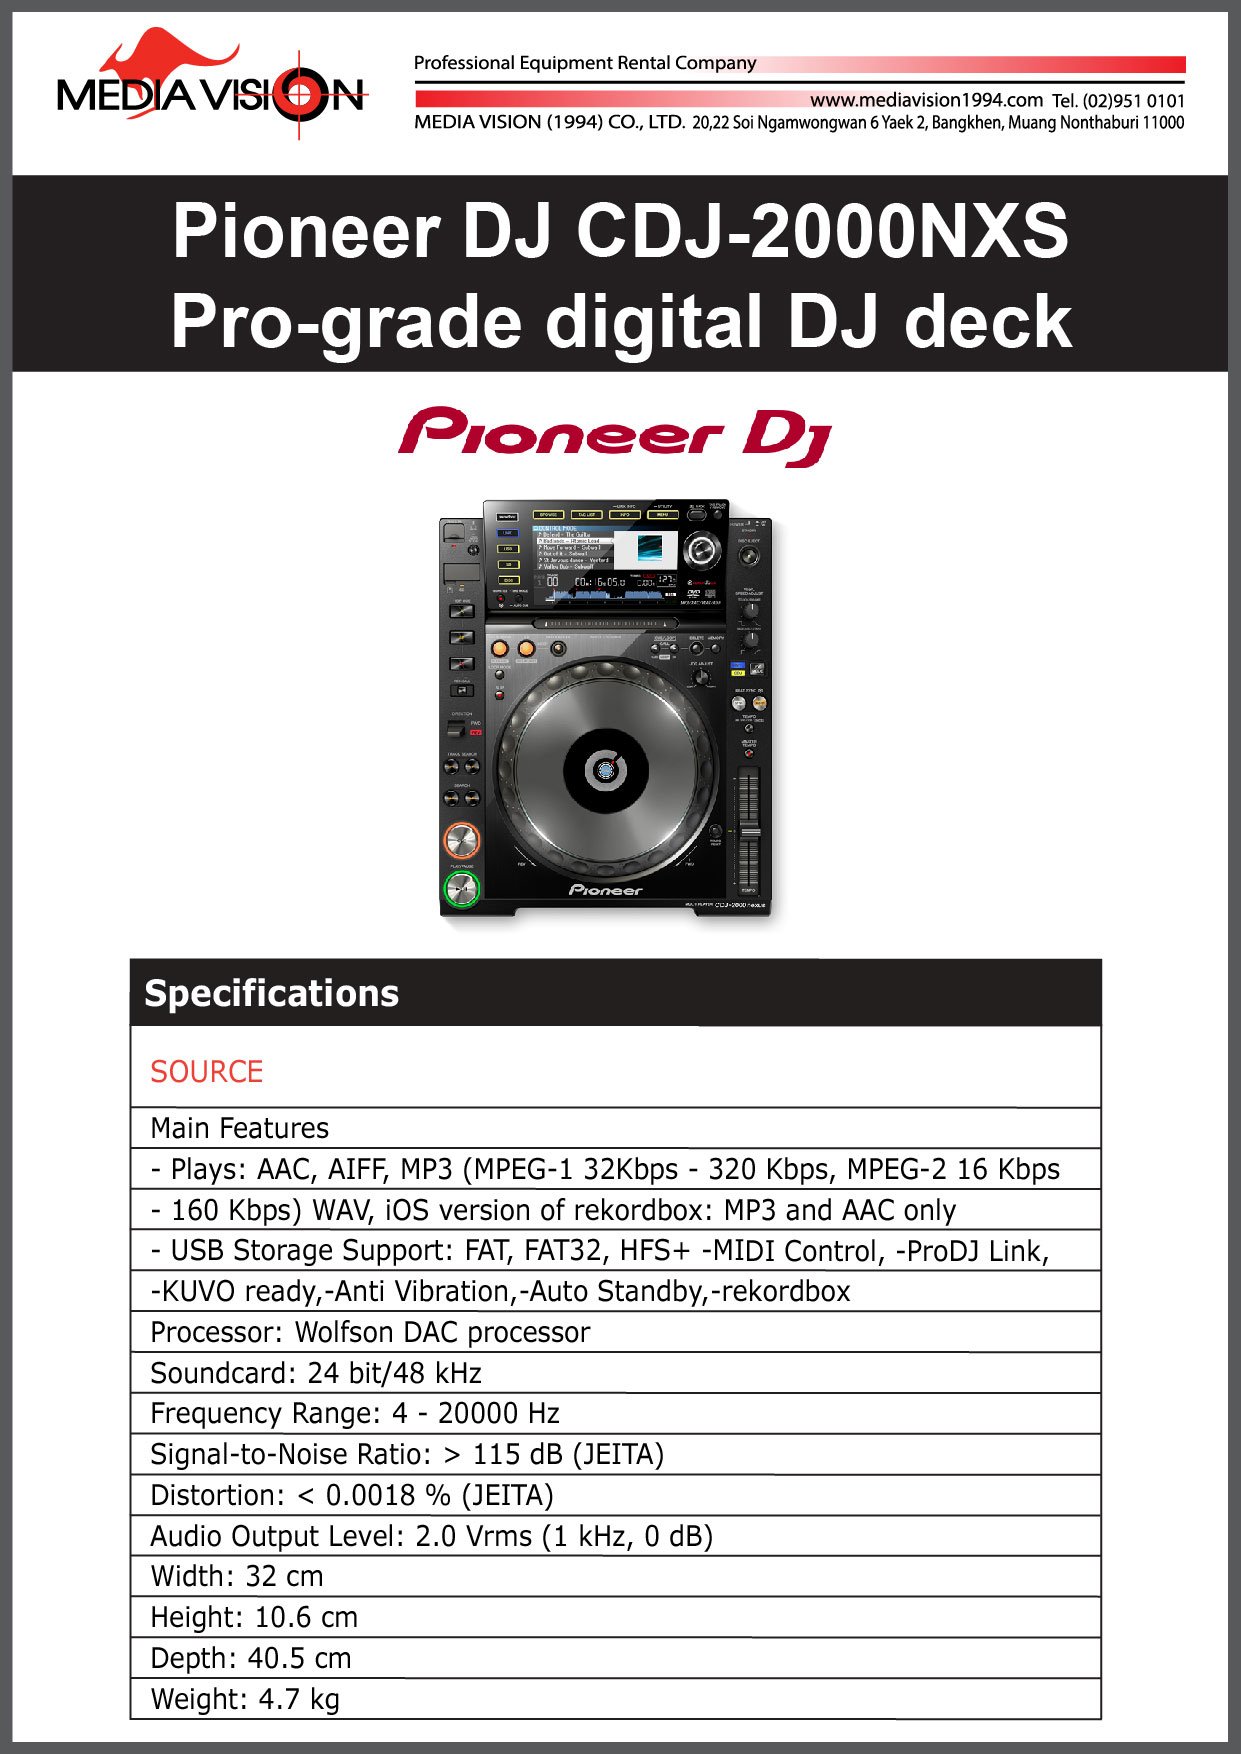  PIONEER DJ CDJ-2000NXS PRO-GRADE DIGITAL DJ DECK